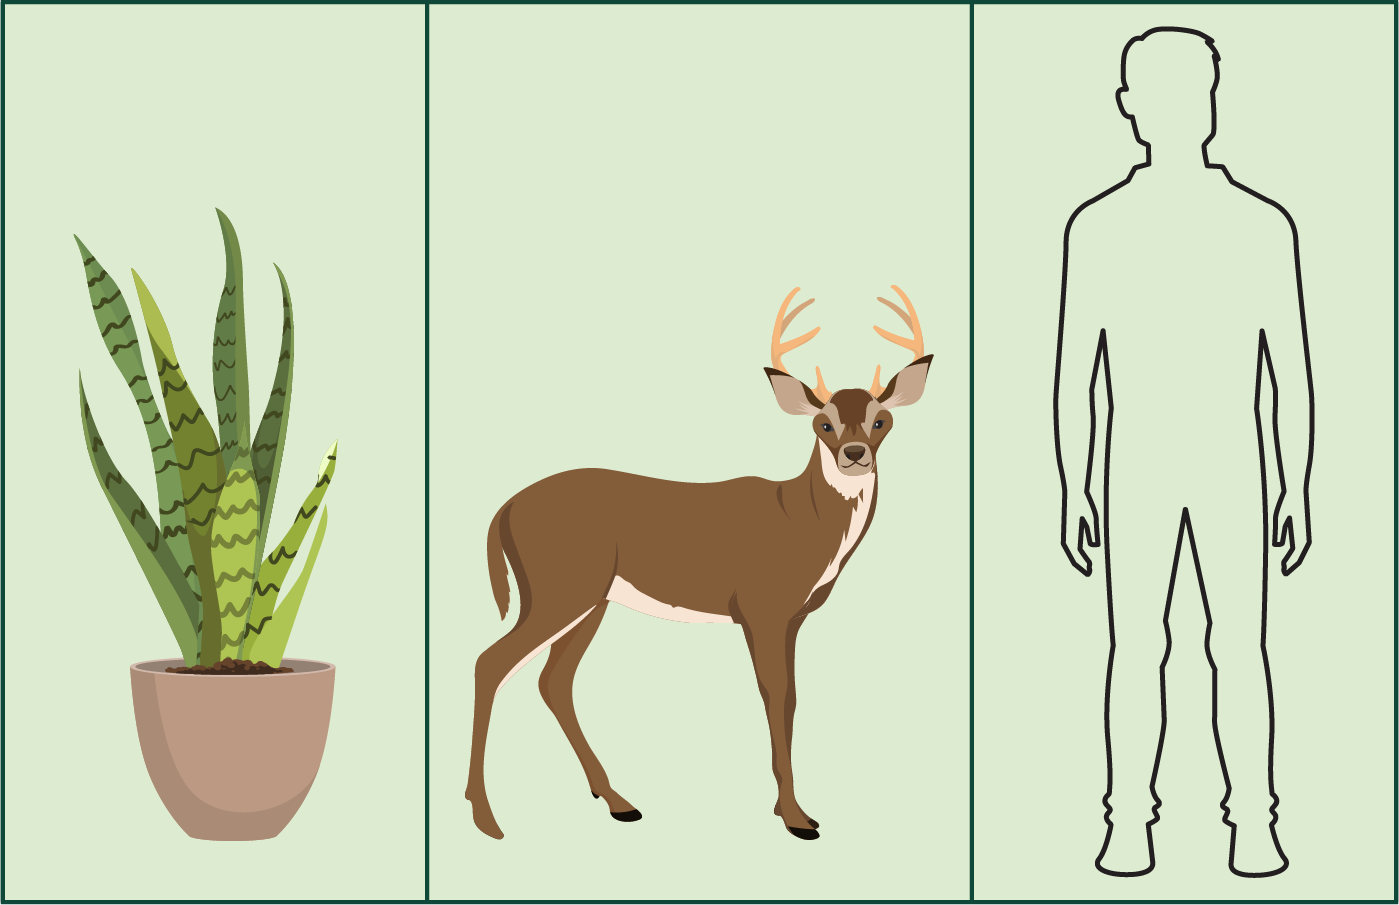 Três painéis, o primeiro contendo o esboço de uma planta, o segundo uma foto de um cervo e o terceiro um esboço de um ser humano.